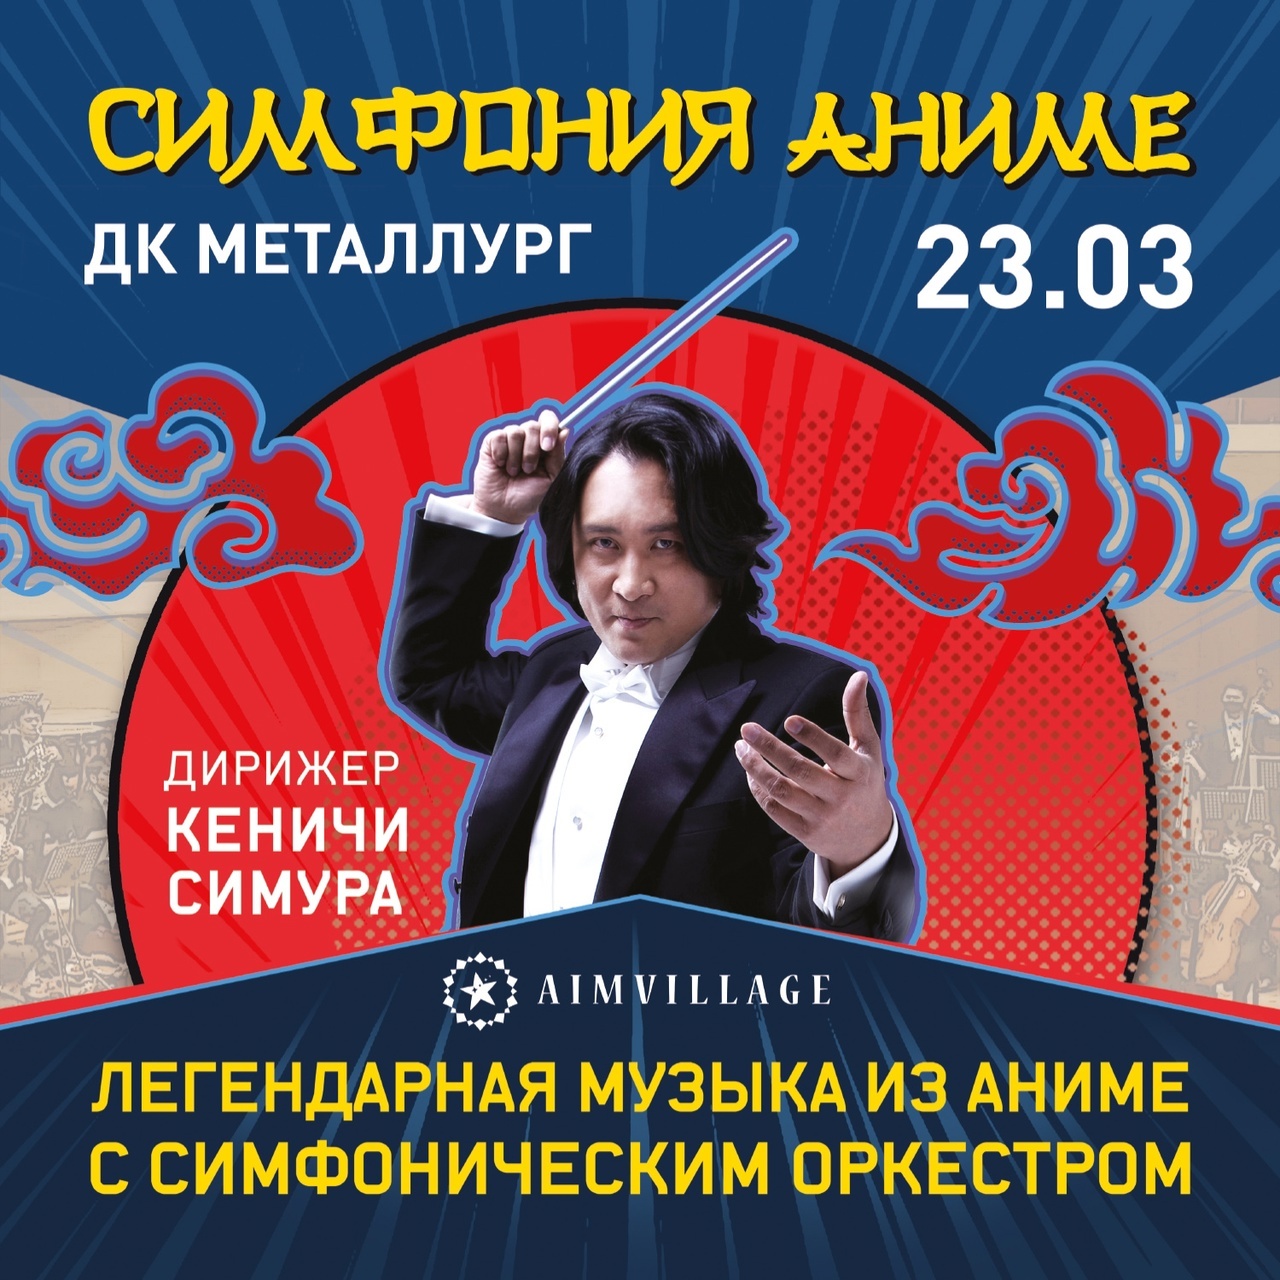 Афиша Ижевска — Симфонический концерт Аниме с Кеничи Симура